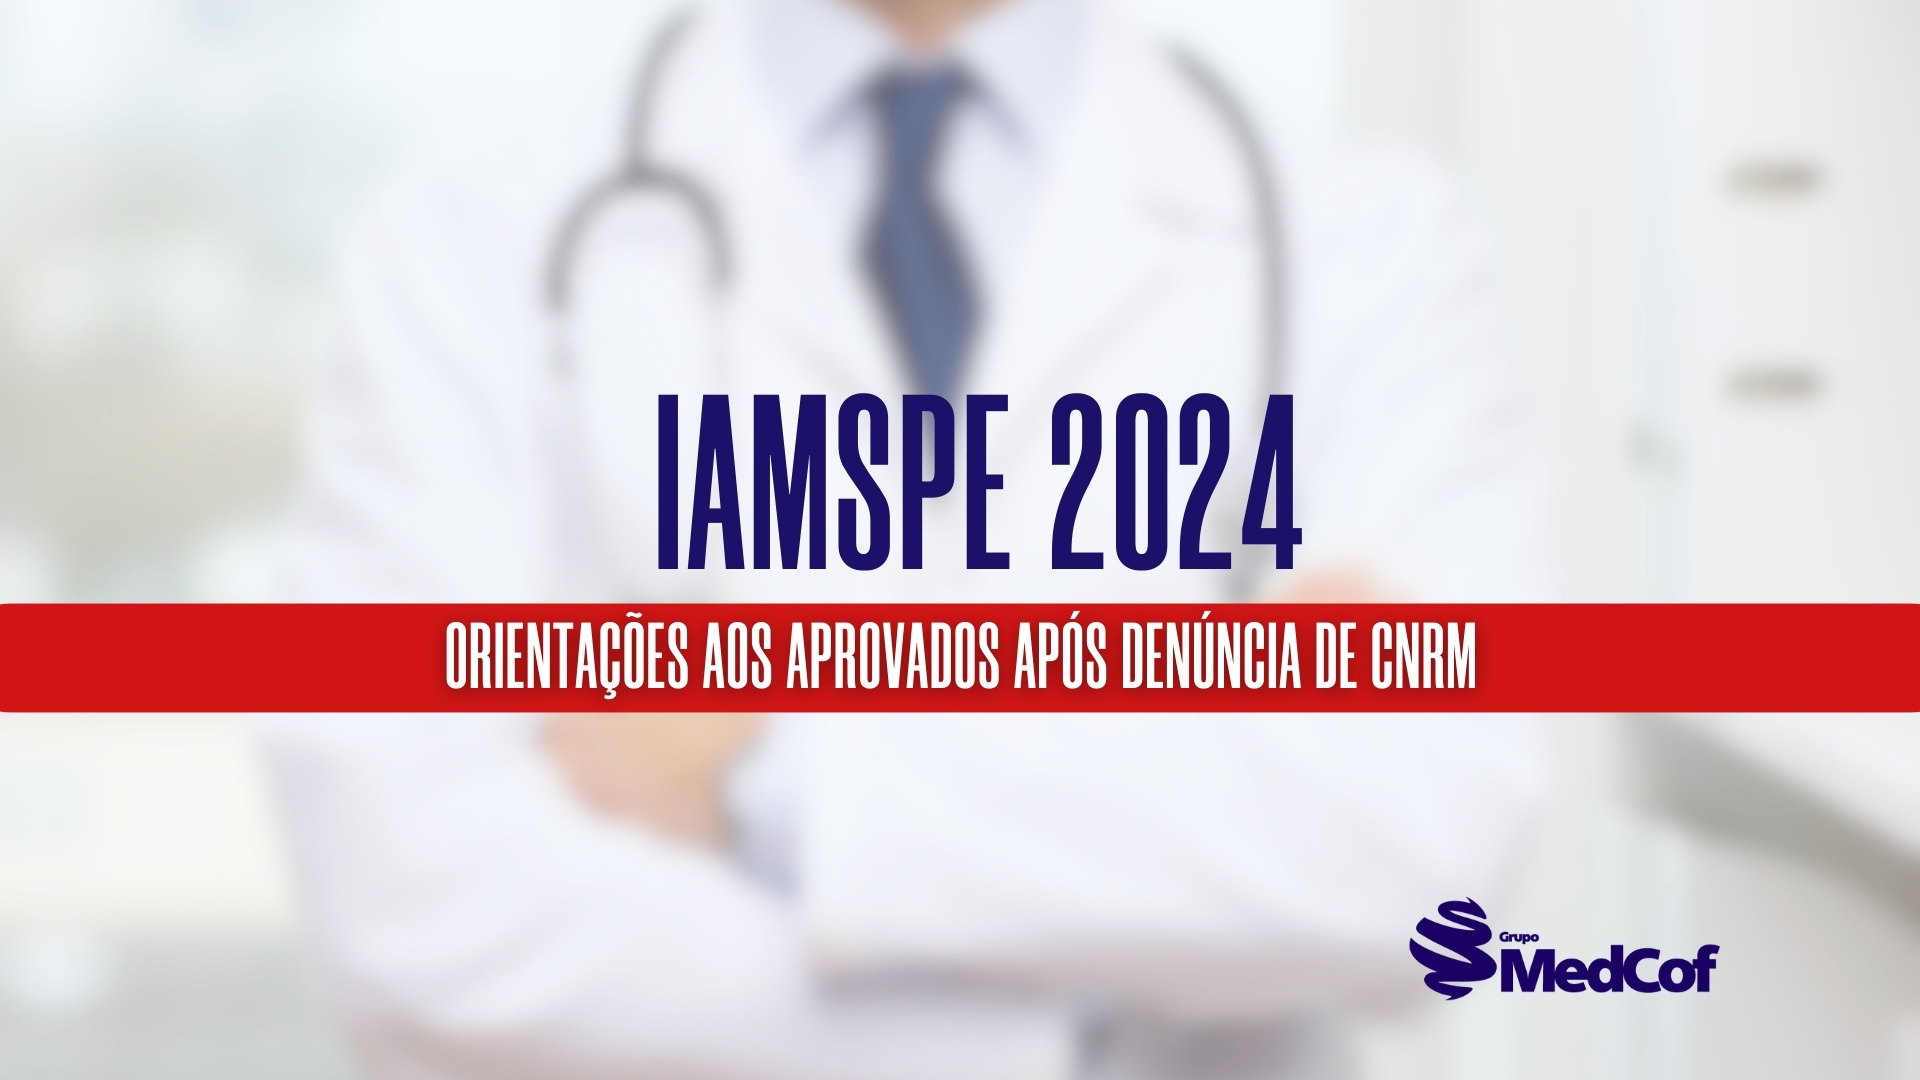 IAMSPE publica orientações para aprovados em processo seletivo 2024 após denúncia de cnrm